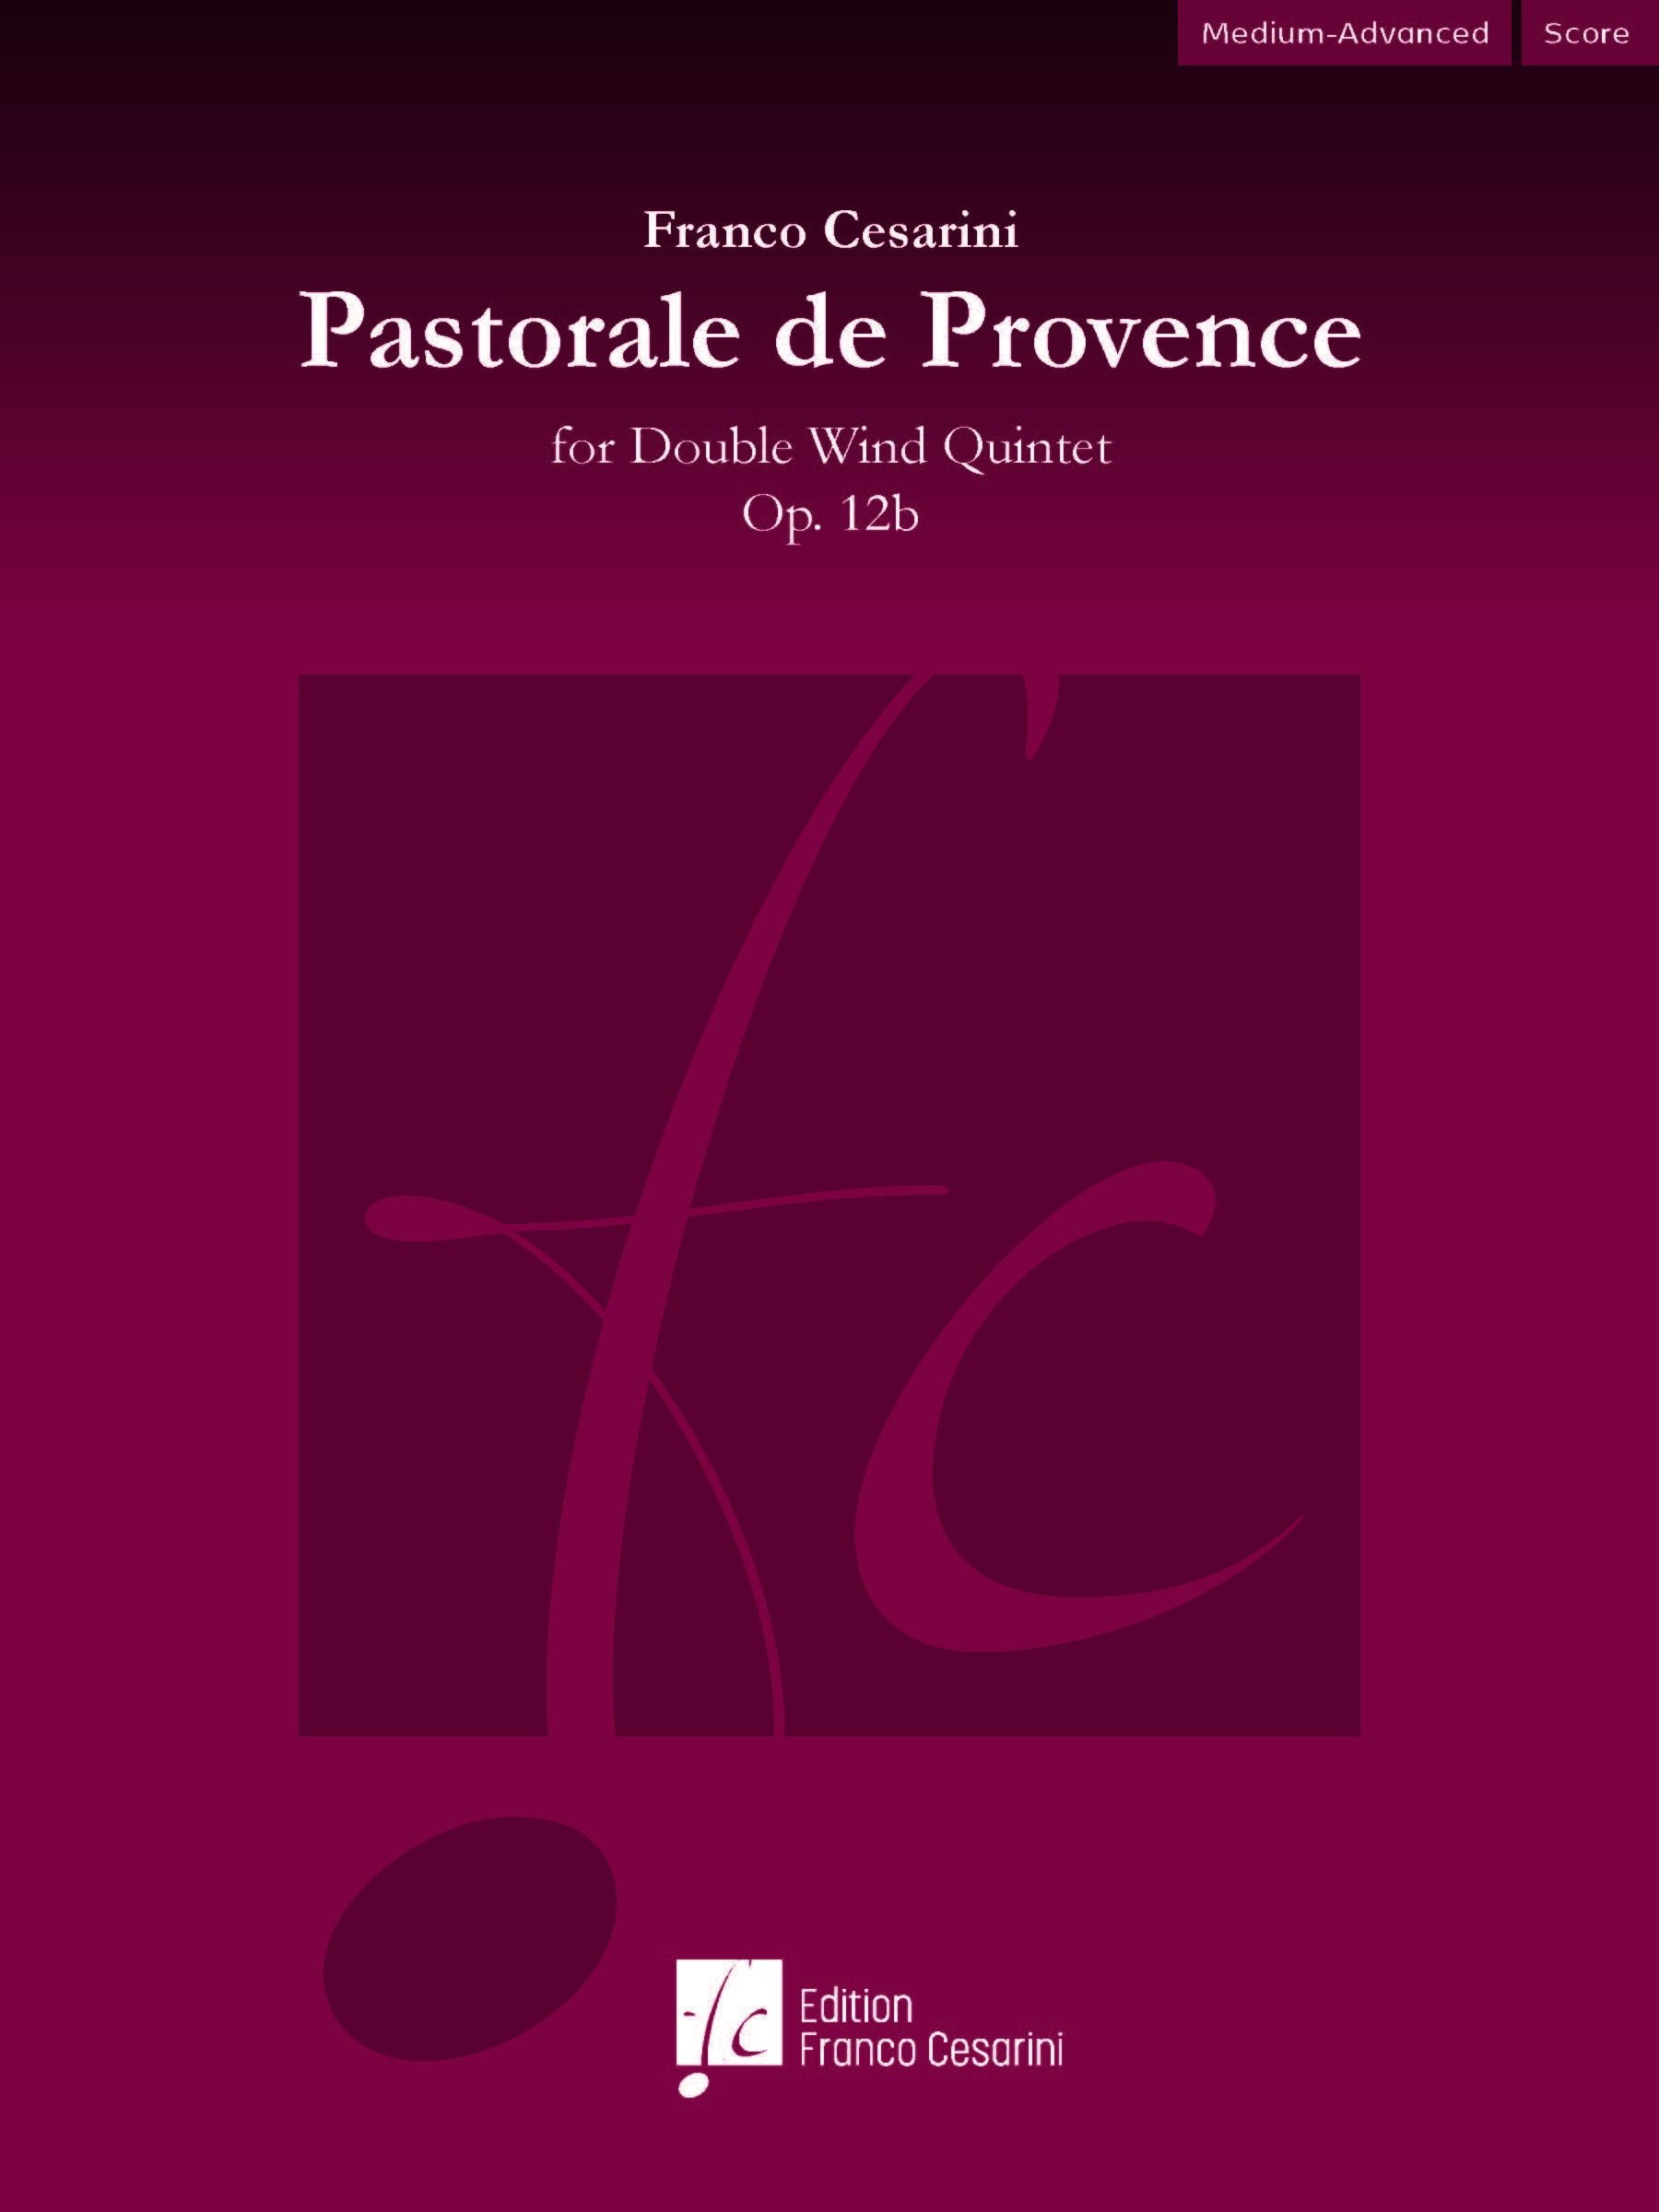 Pastorale de Provence, Op. 12b